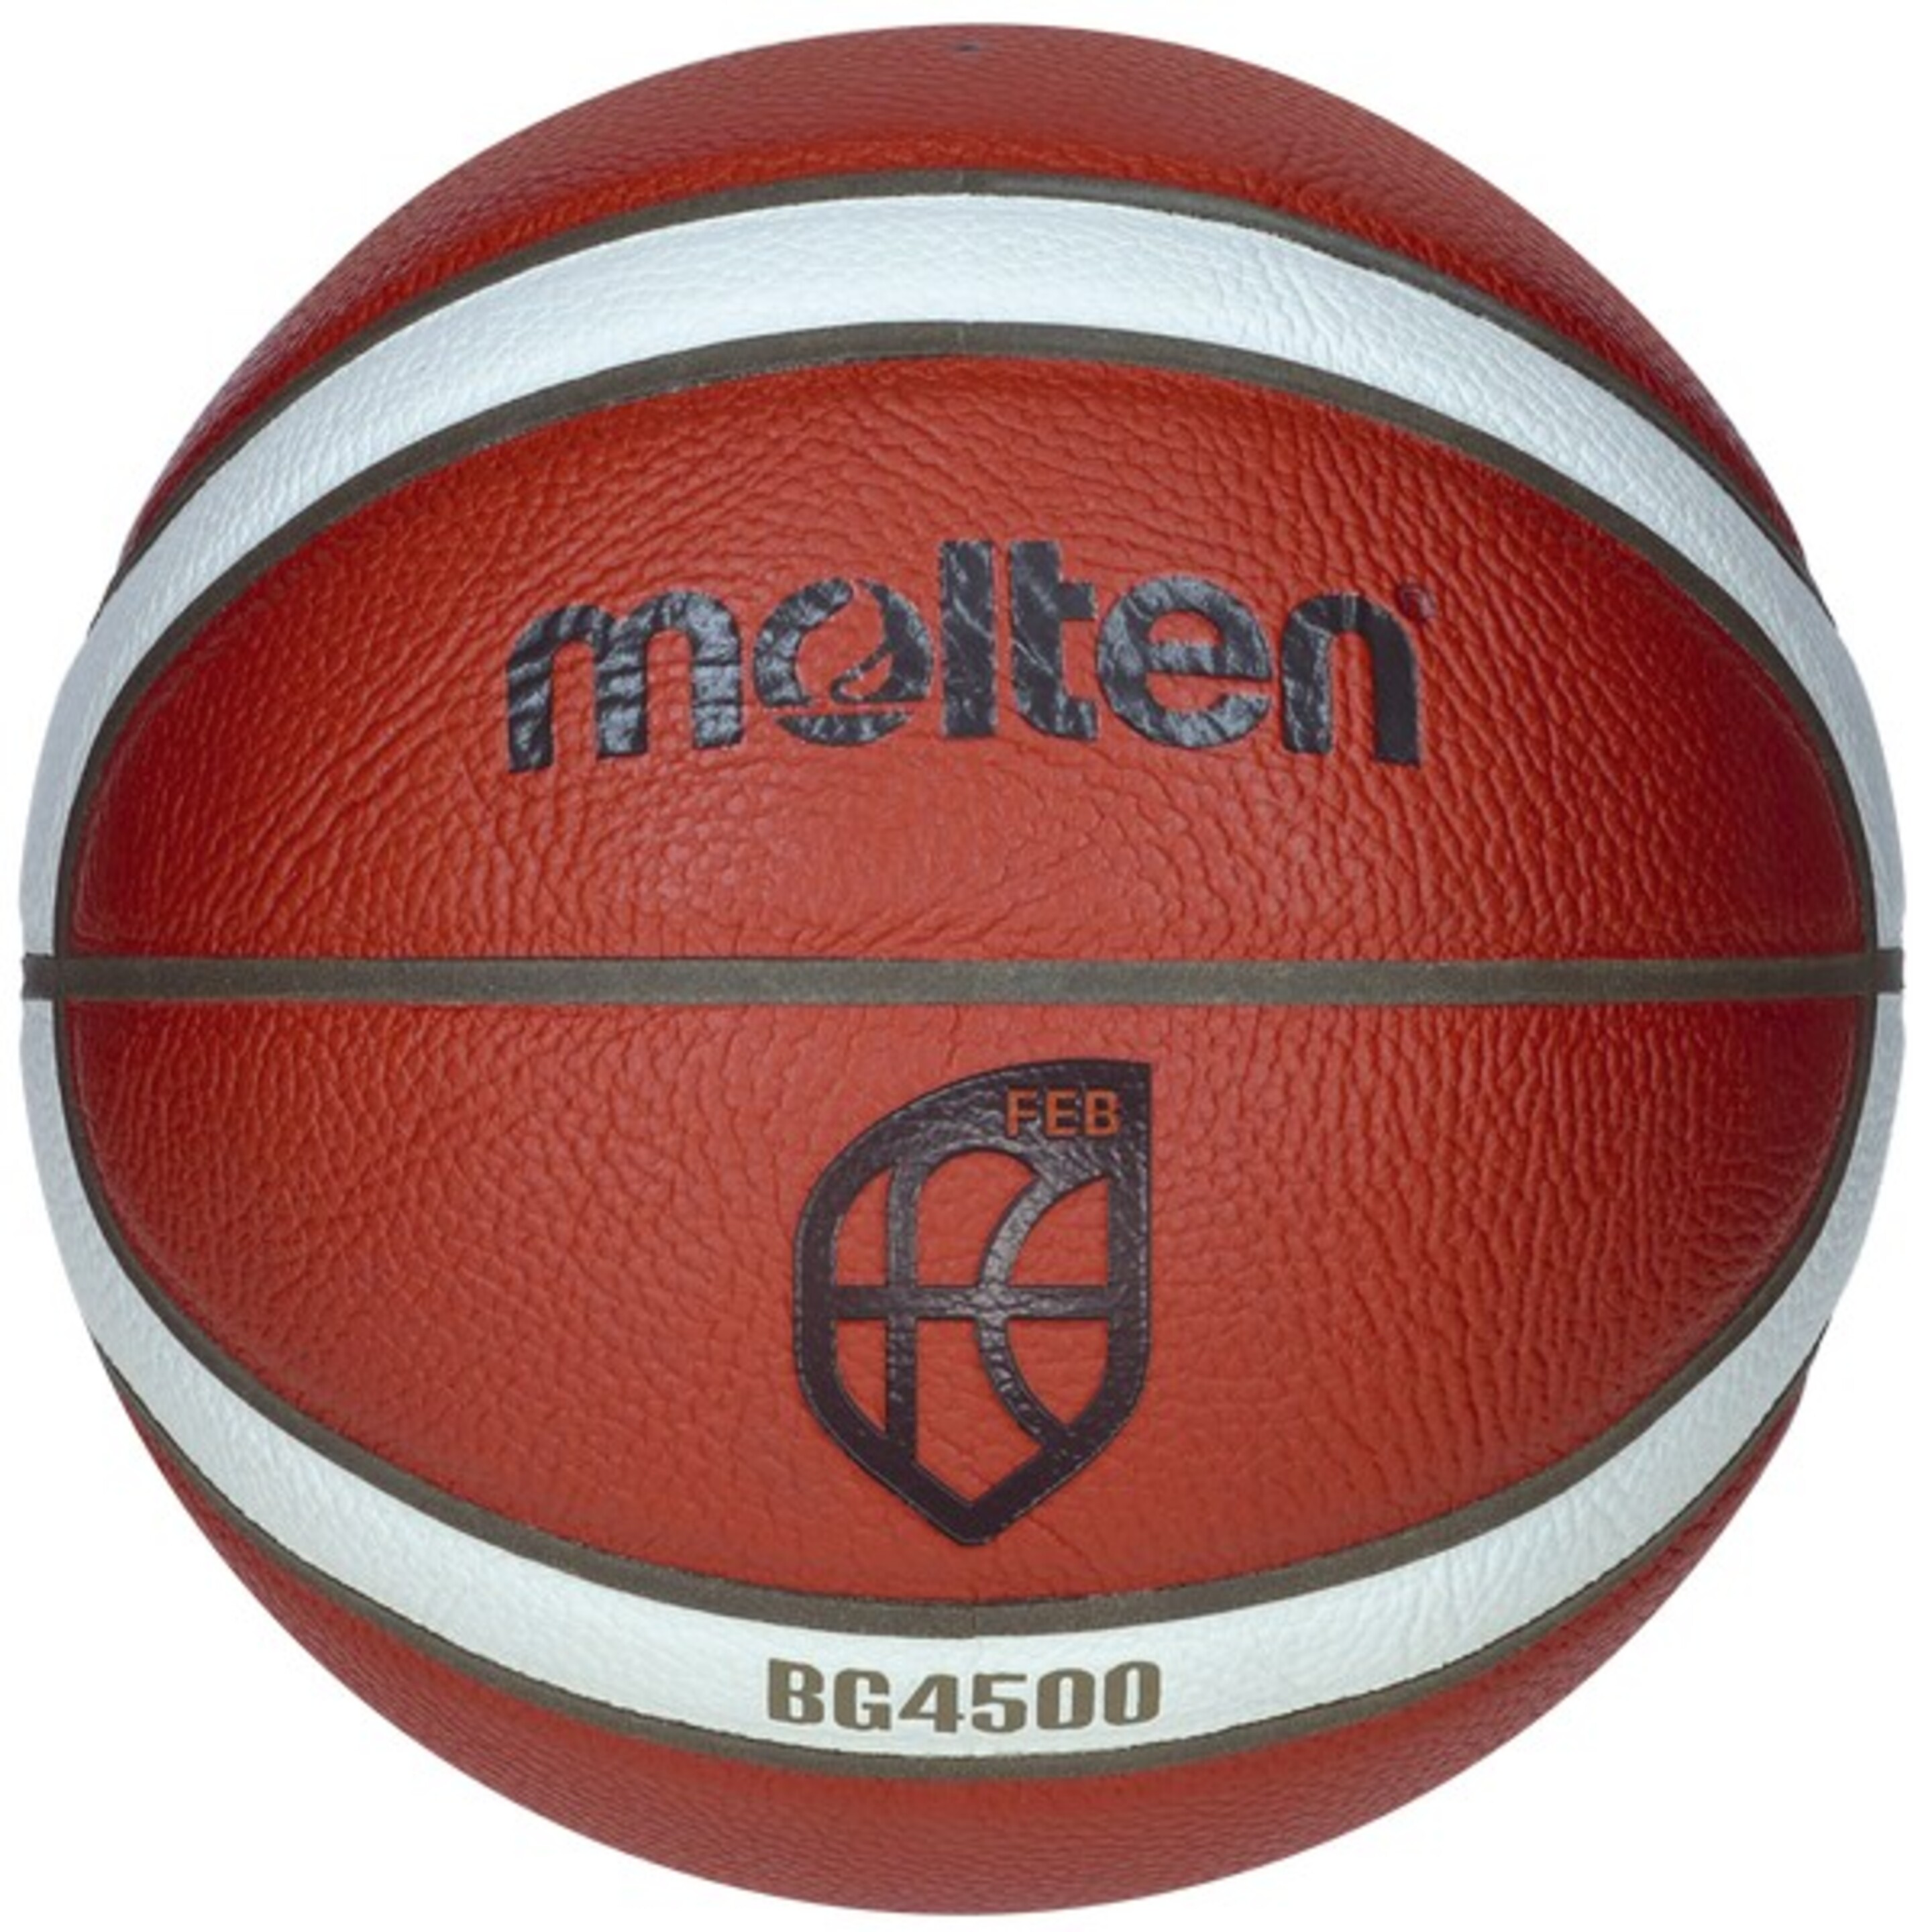 Balón De Baloncesto Molten B7g4500 Cuero Sintético